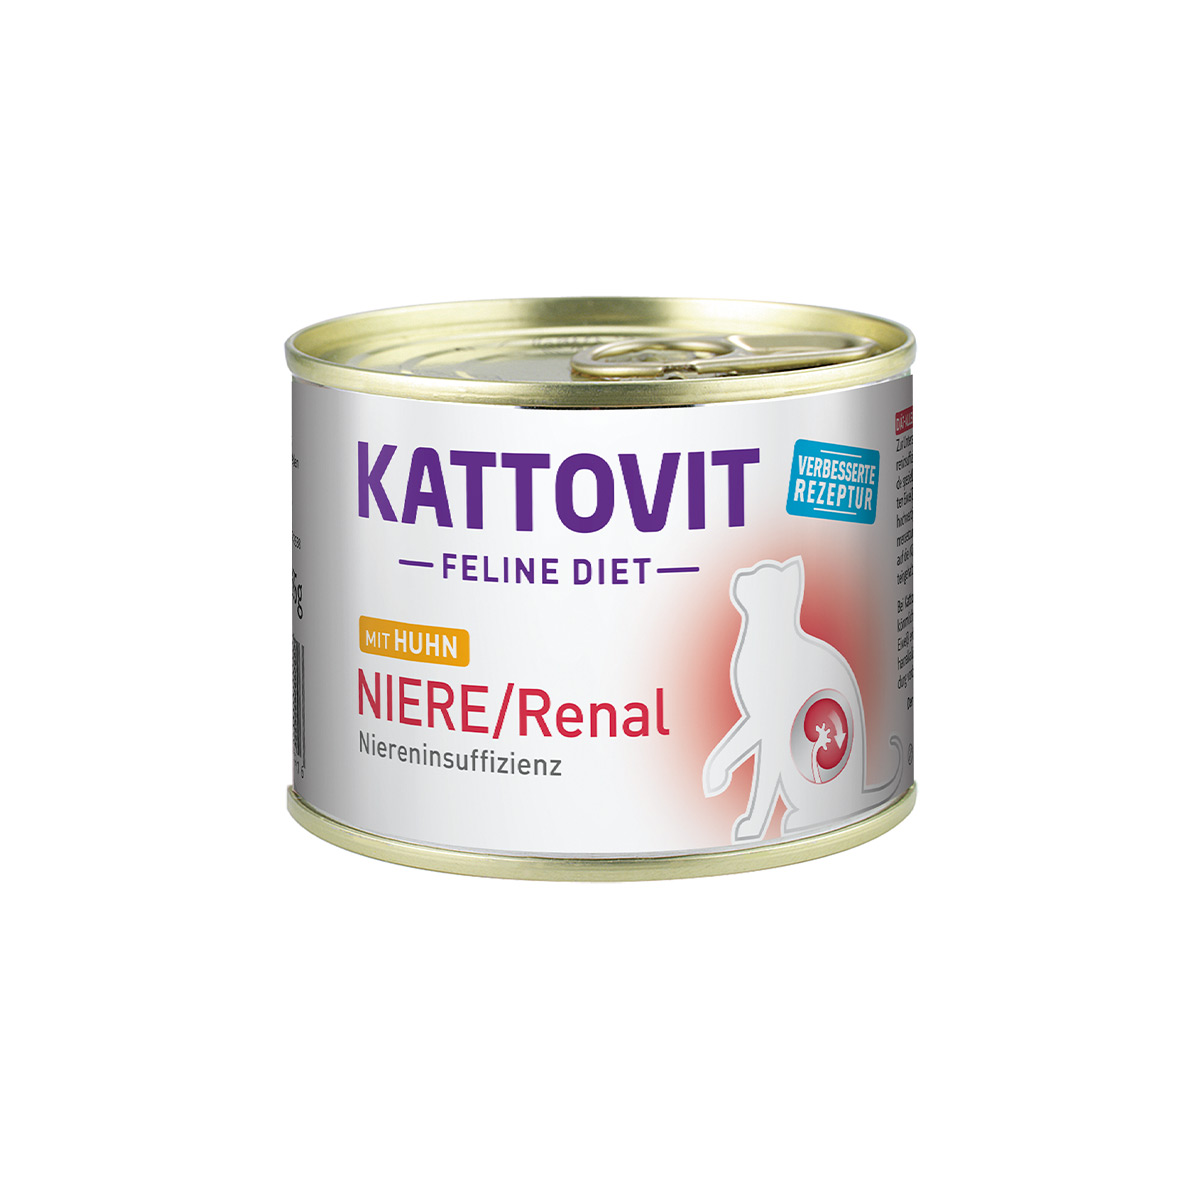 Kattovit Feline Diet Niere Renal Huhn 12x185g von Kattovit